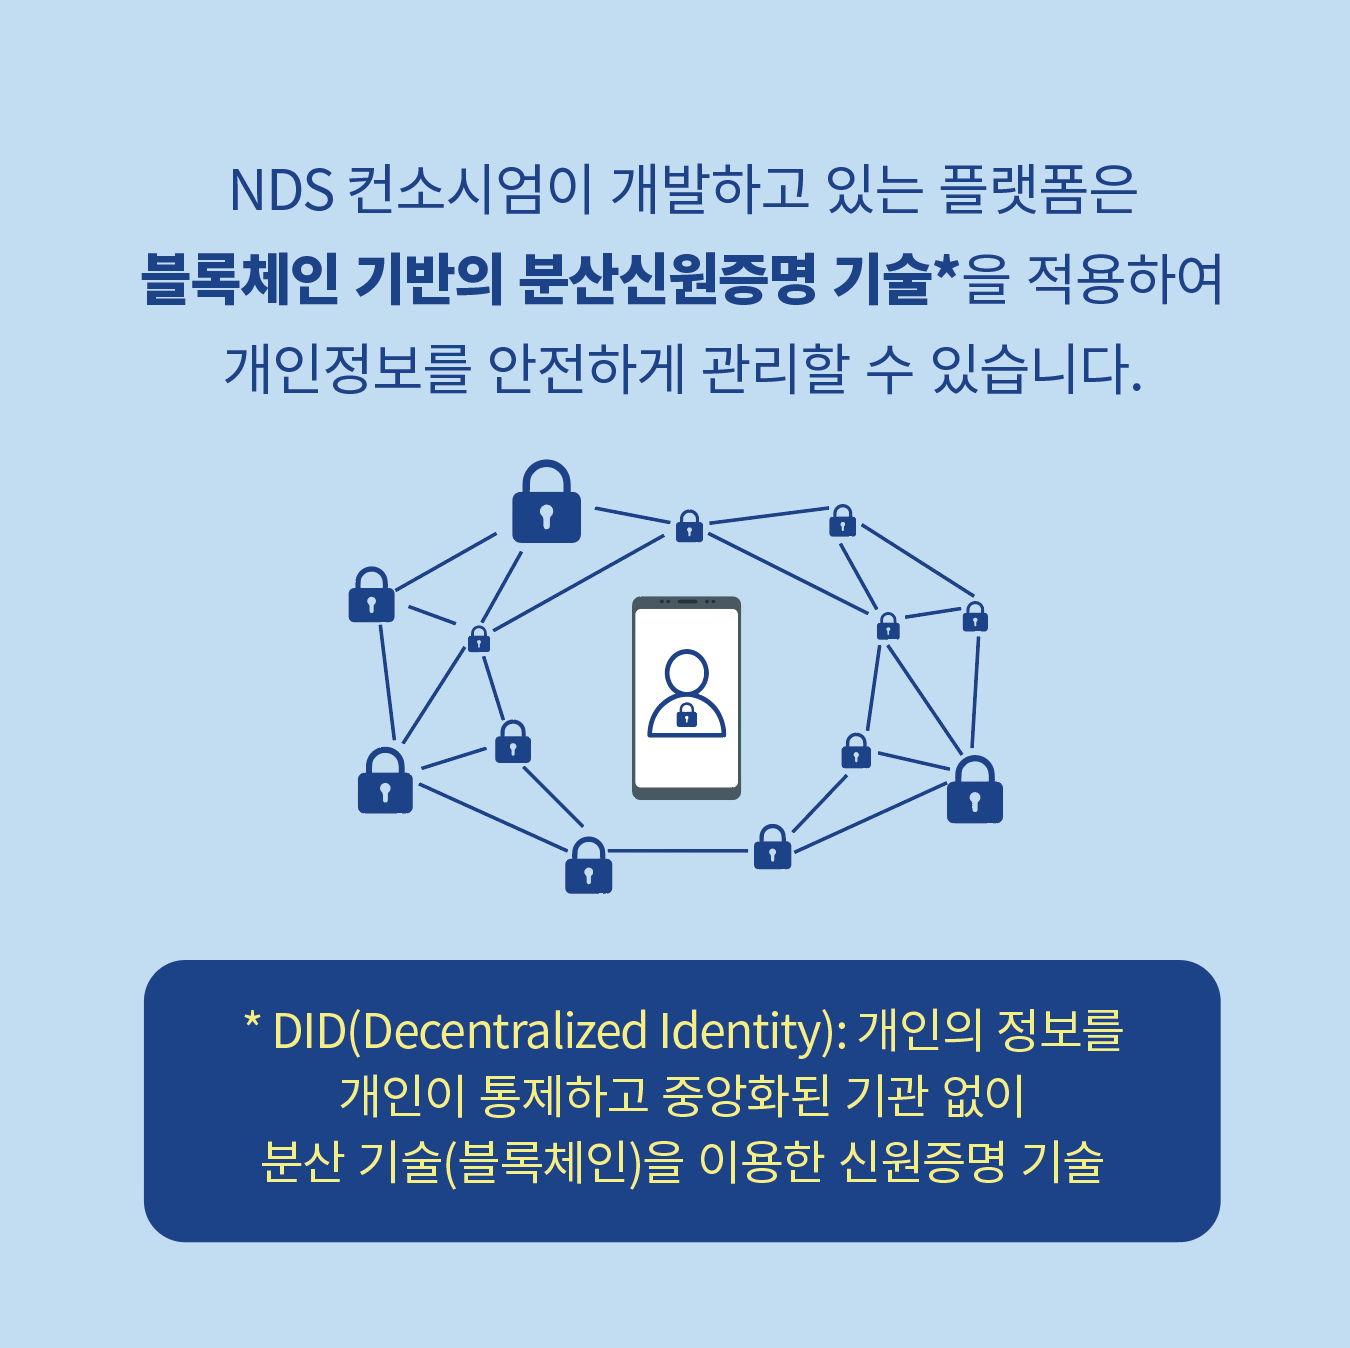 NDS 컨소시엄이 개발하고 있는 플랫폼은 블록체인 기반의 분산신원증명 기술*을 적용하여 개인정보를 안전하게 관리할 수 있습니다. *DID(Decentralized Identity): 개인의 정보를 개인이 통제하고 중앙화된 기관 없이 분산 기술(블록체인)을 이용한 신원증명 기술